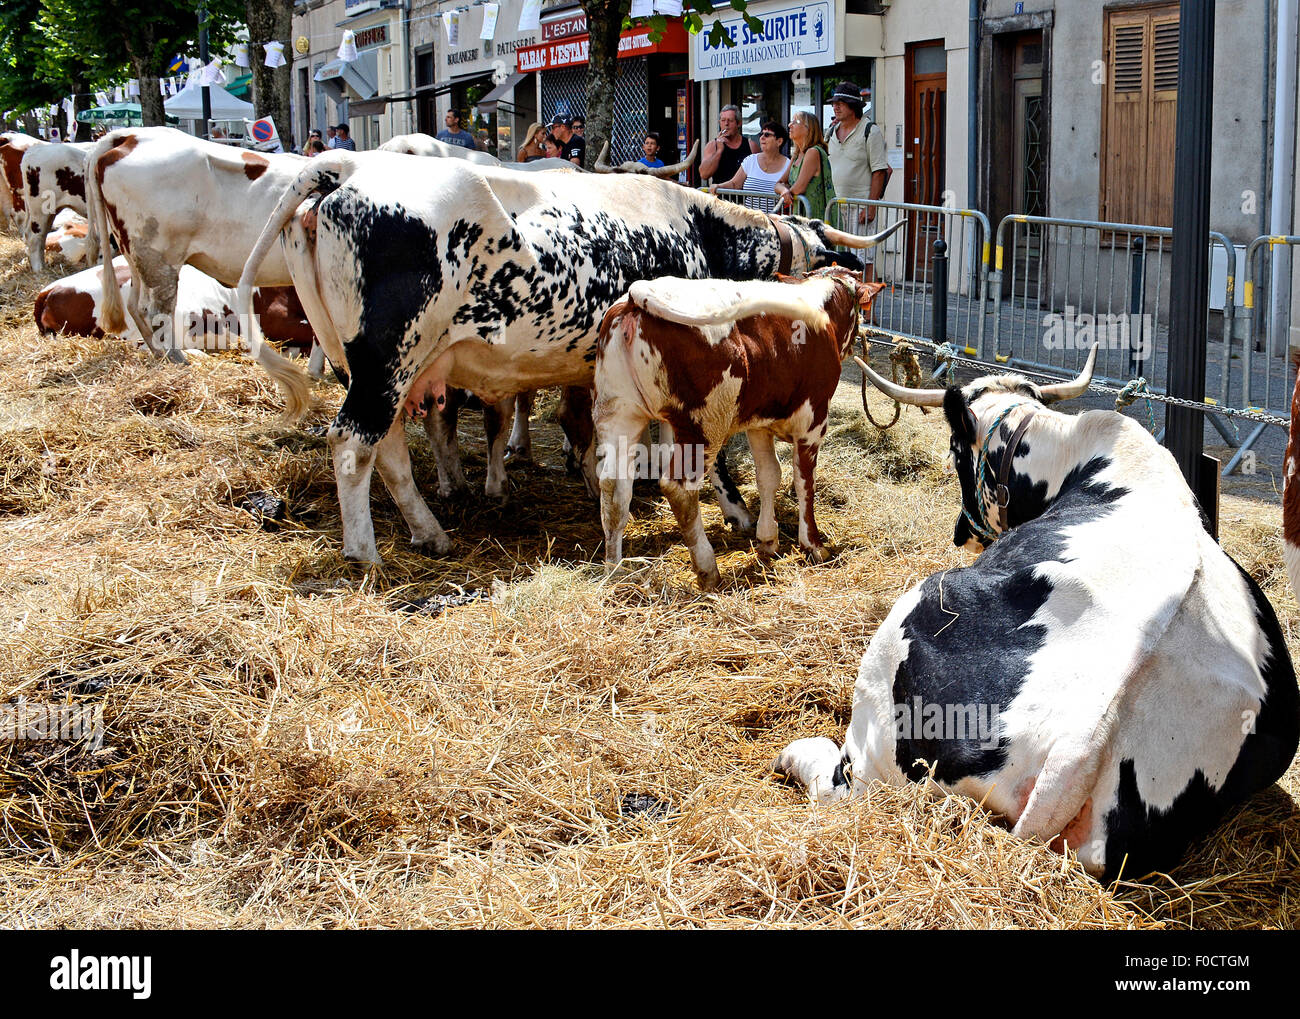 Vaches ferrandaises présentées au salon agricole d'Ambert, Livradois, Puy-de-Dome, Auvergne, France Banque D'Images